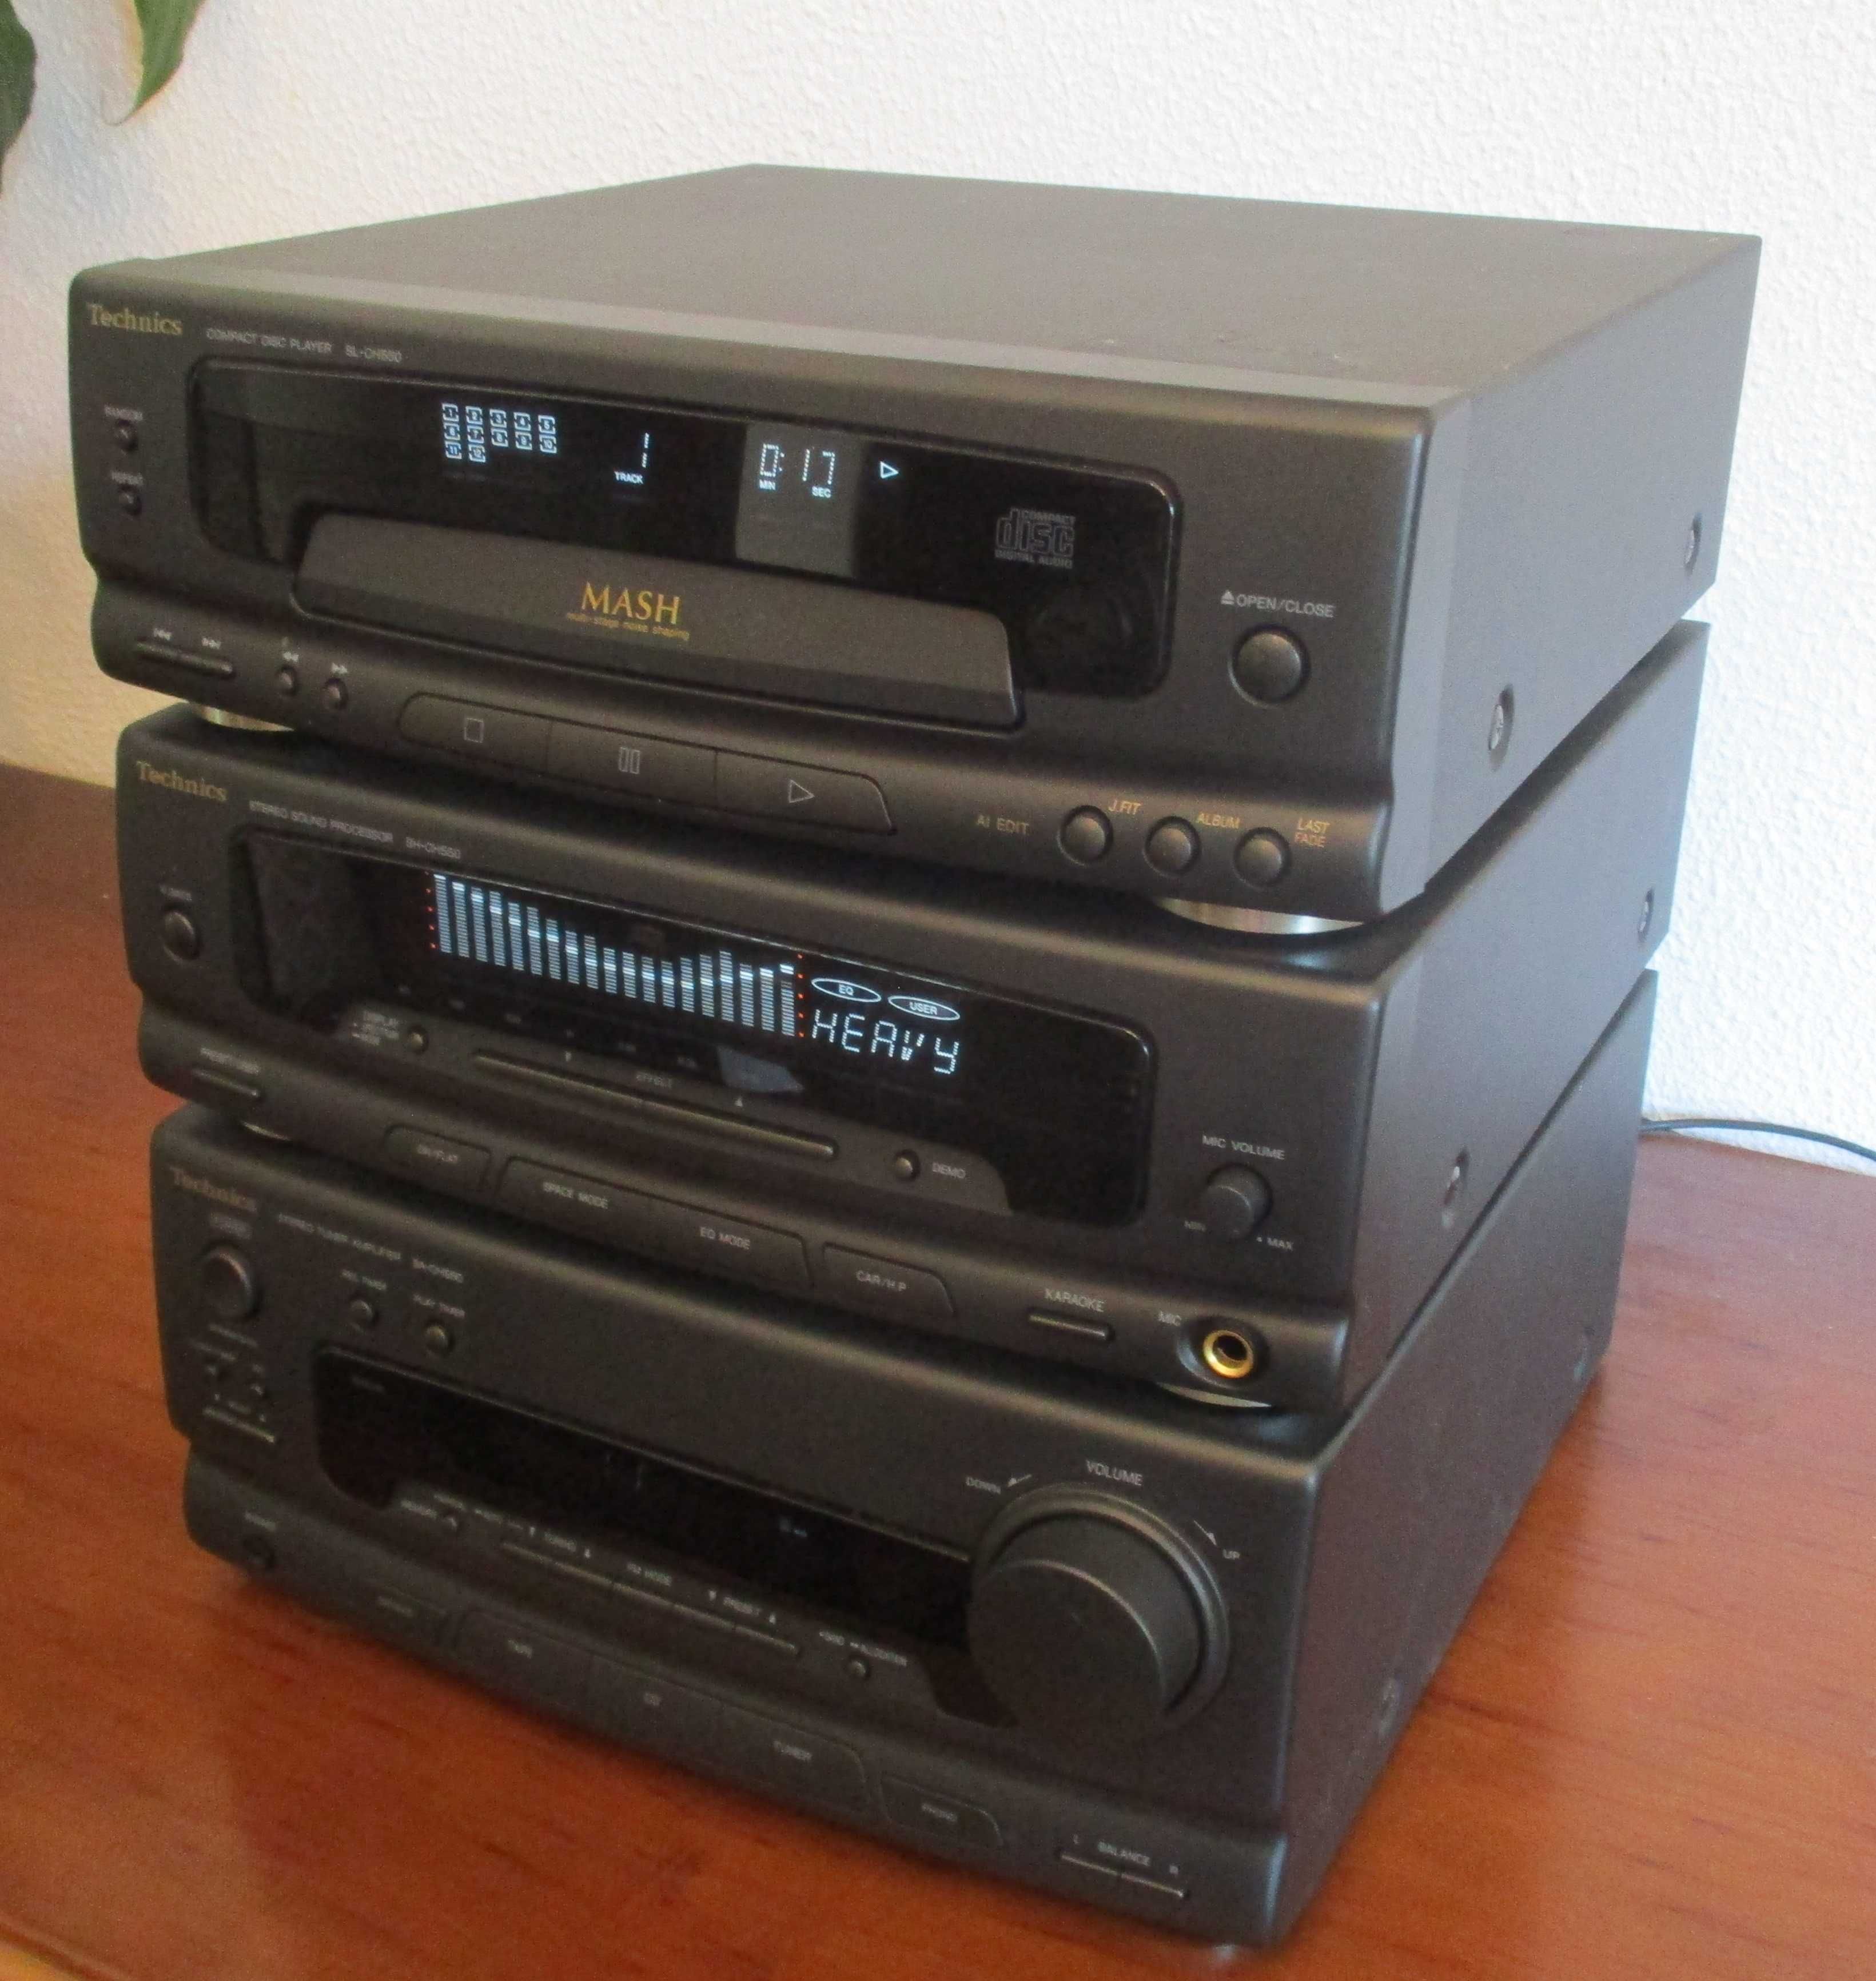 Aparelhagem TECHNICS HIFI Stereo com CD, Radio e Amplificador Tuner